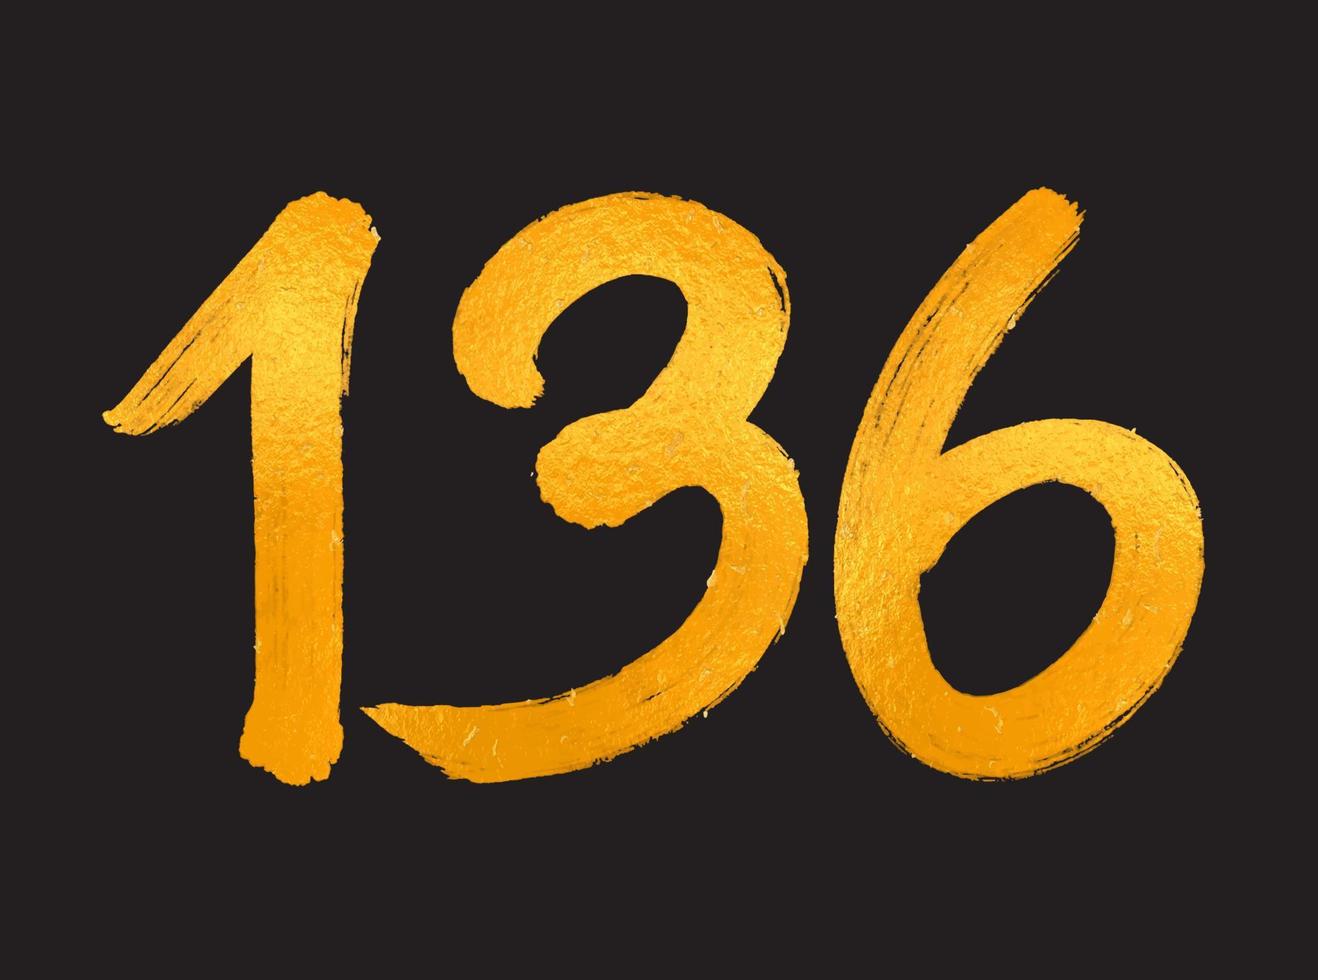 136 numero logo vettore illustrazione, 136 anni anniversario celebrazione vettore modello, 136° compleanno, oro lettering numeri spazzola disegno mano disegnato schizzo, numero logo design per Stampa, t camicia